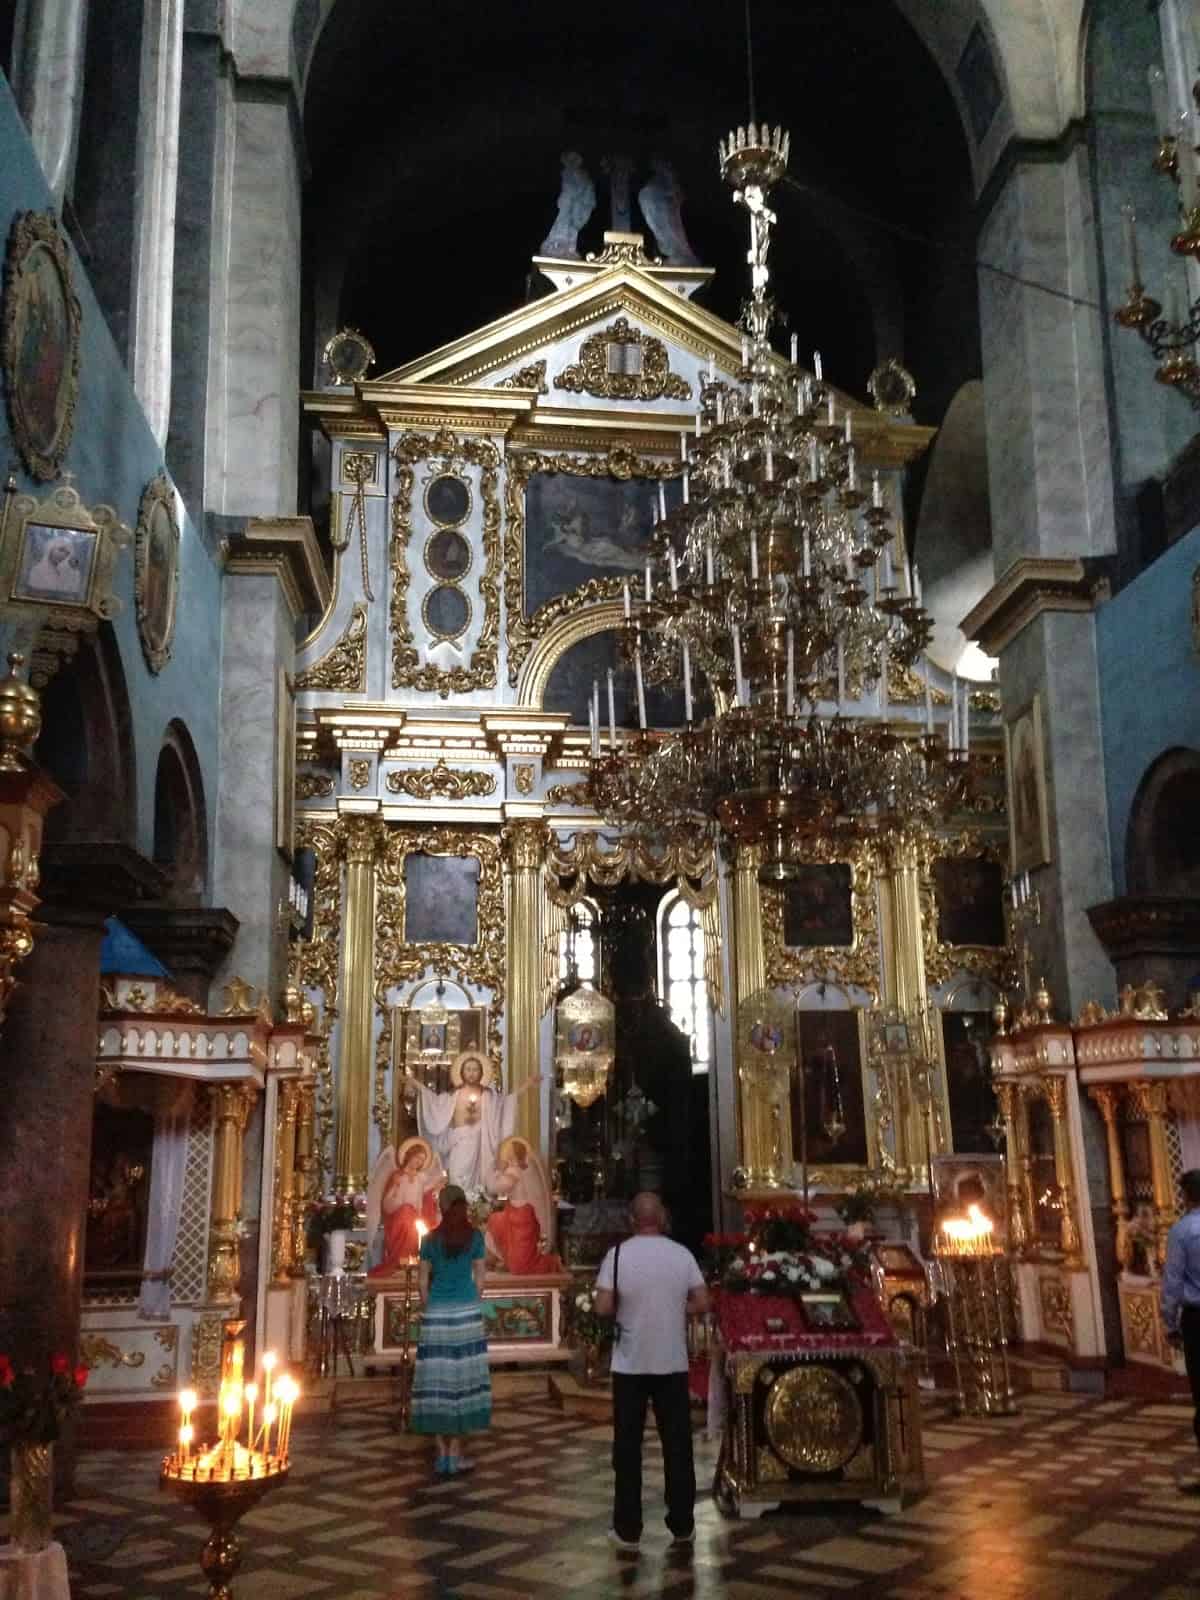 Transfiguration Cathedral in Chernihiv, Ukraine